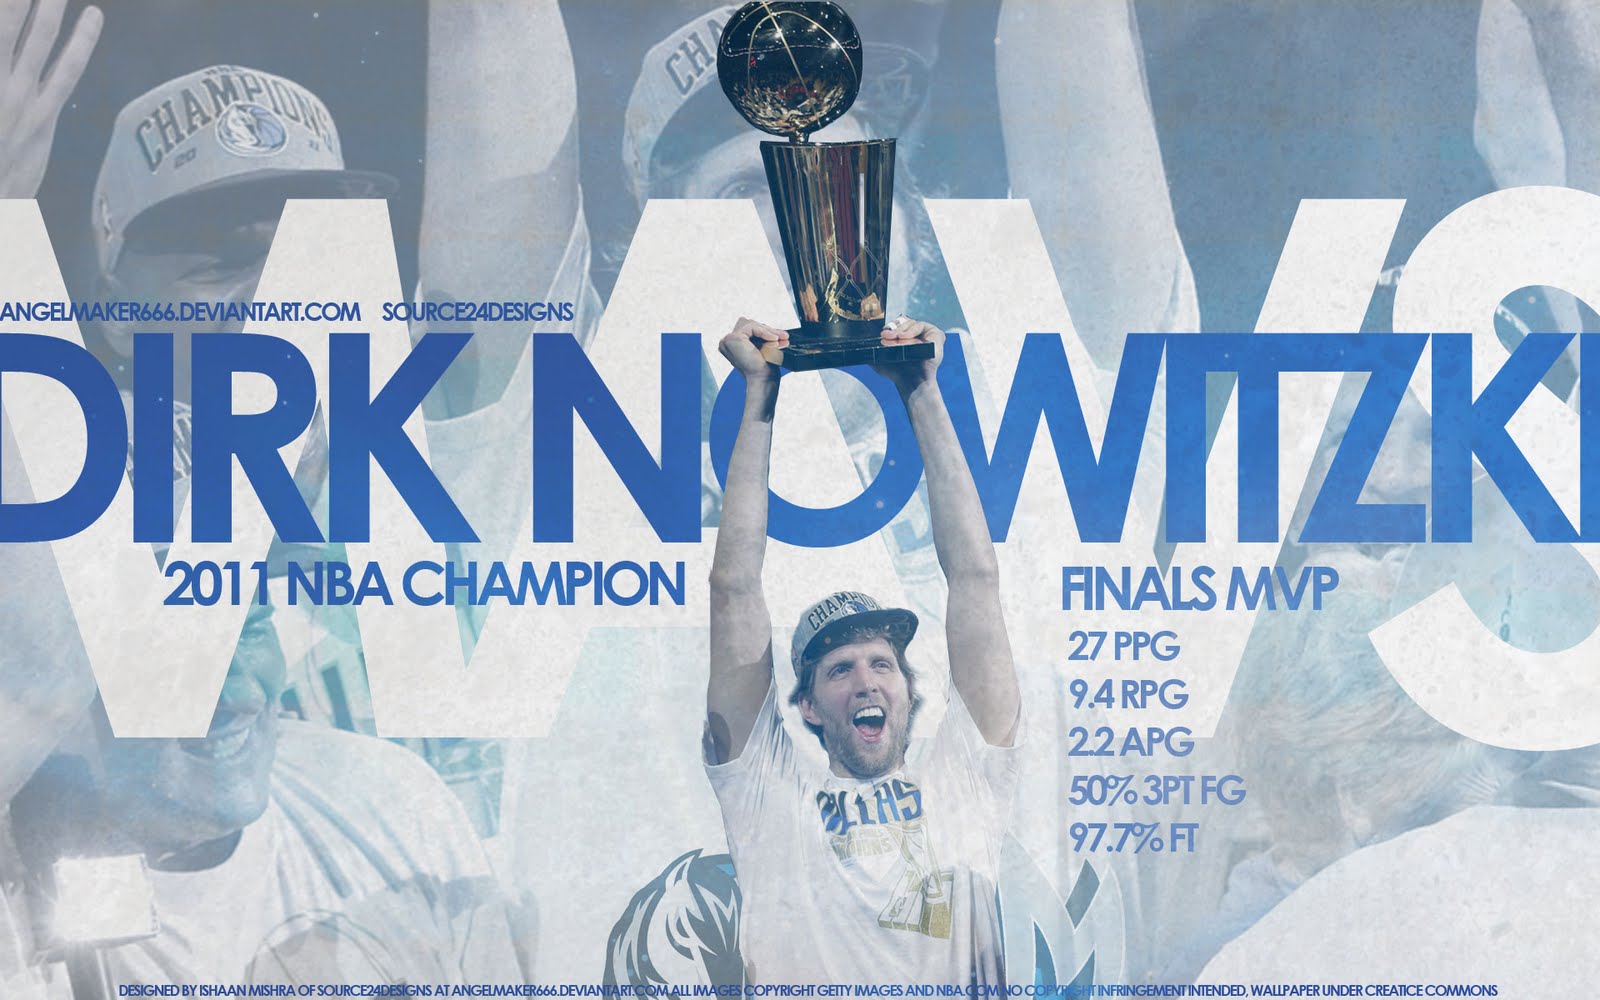 http://2.bp.blogspot.com/-kca0clDOOeg/Tftku86dyfI/AAAAAAAAF34/bcFybDKmopc/s1600/Dirk-Nowitzki-2011-NBA-Finals-MVP-Stats-Widescreen-Wallpaper-BasketWallpapers.com-.jpg